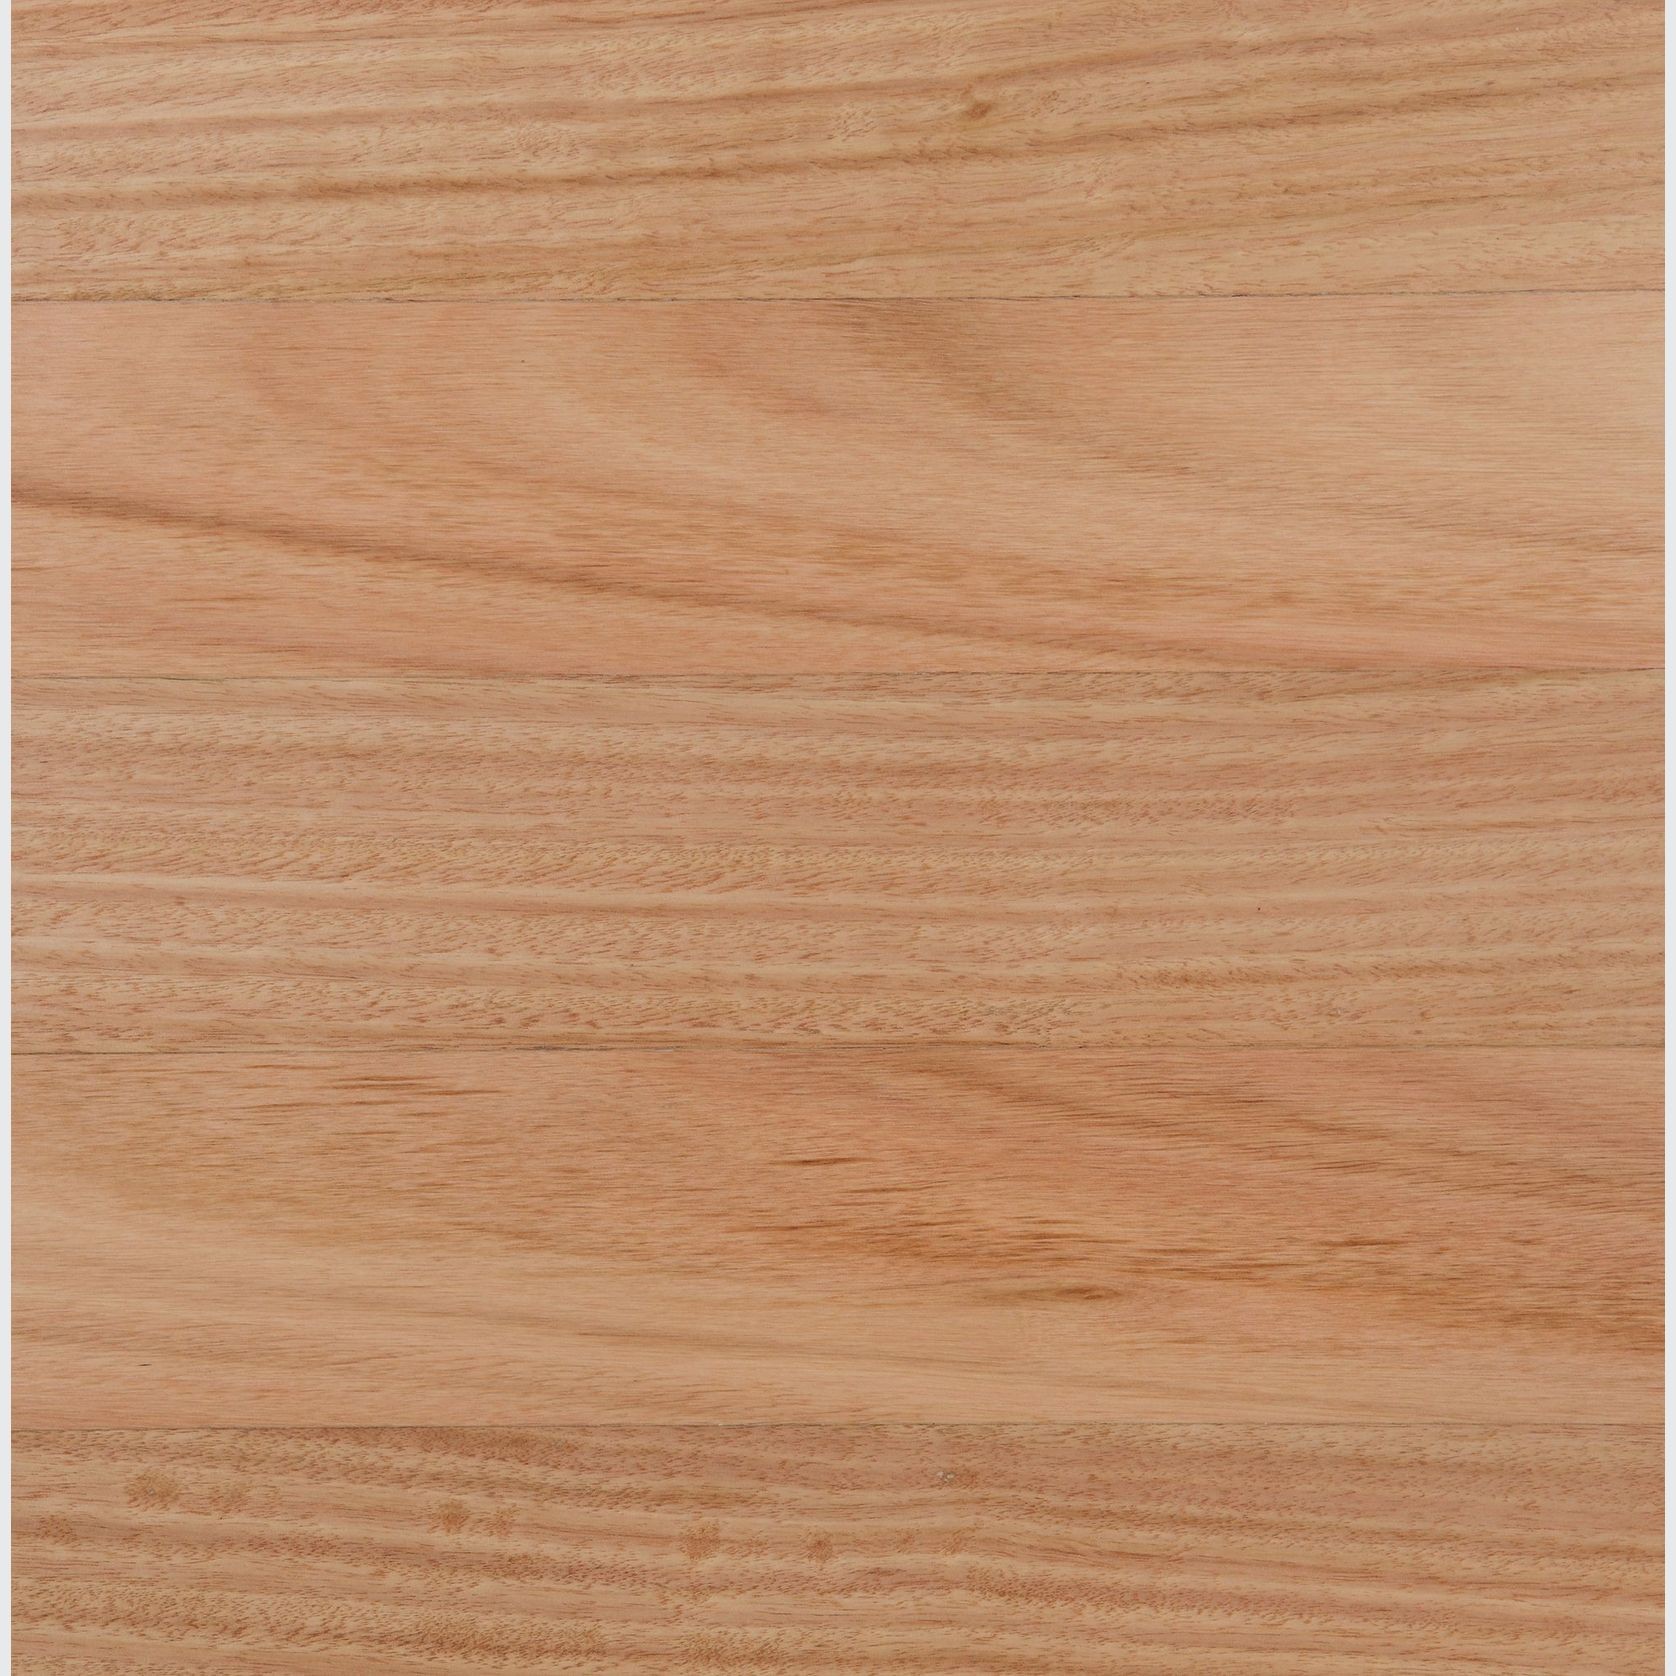 Saligna Wood Flooring, Water Based Polyurethane Finish gallery detail image